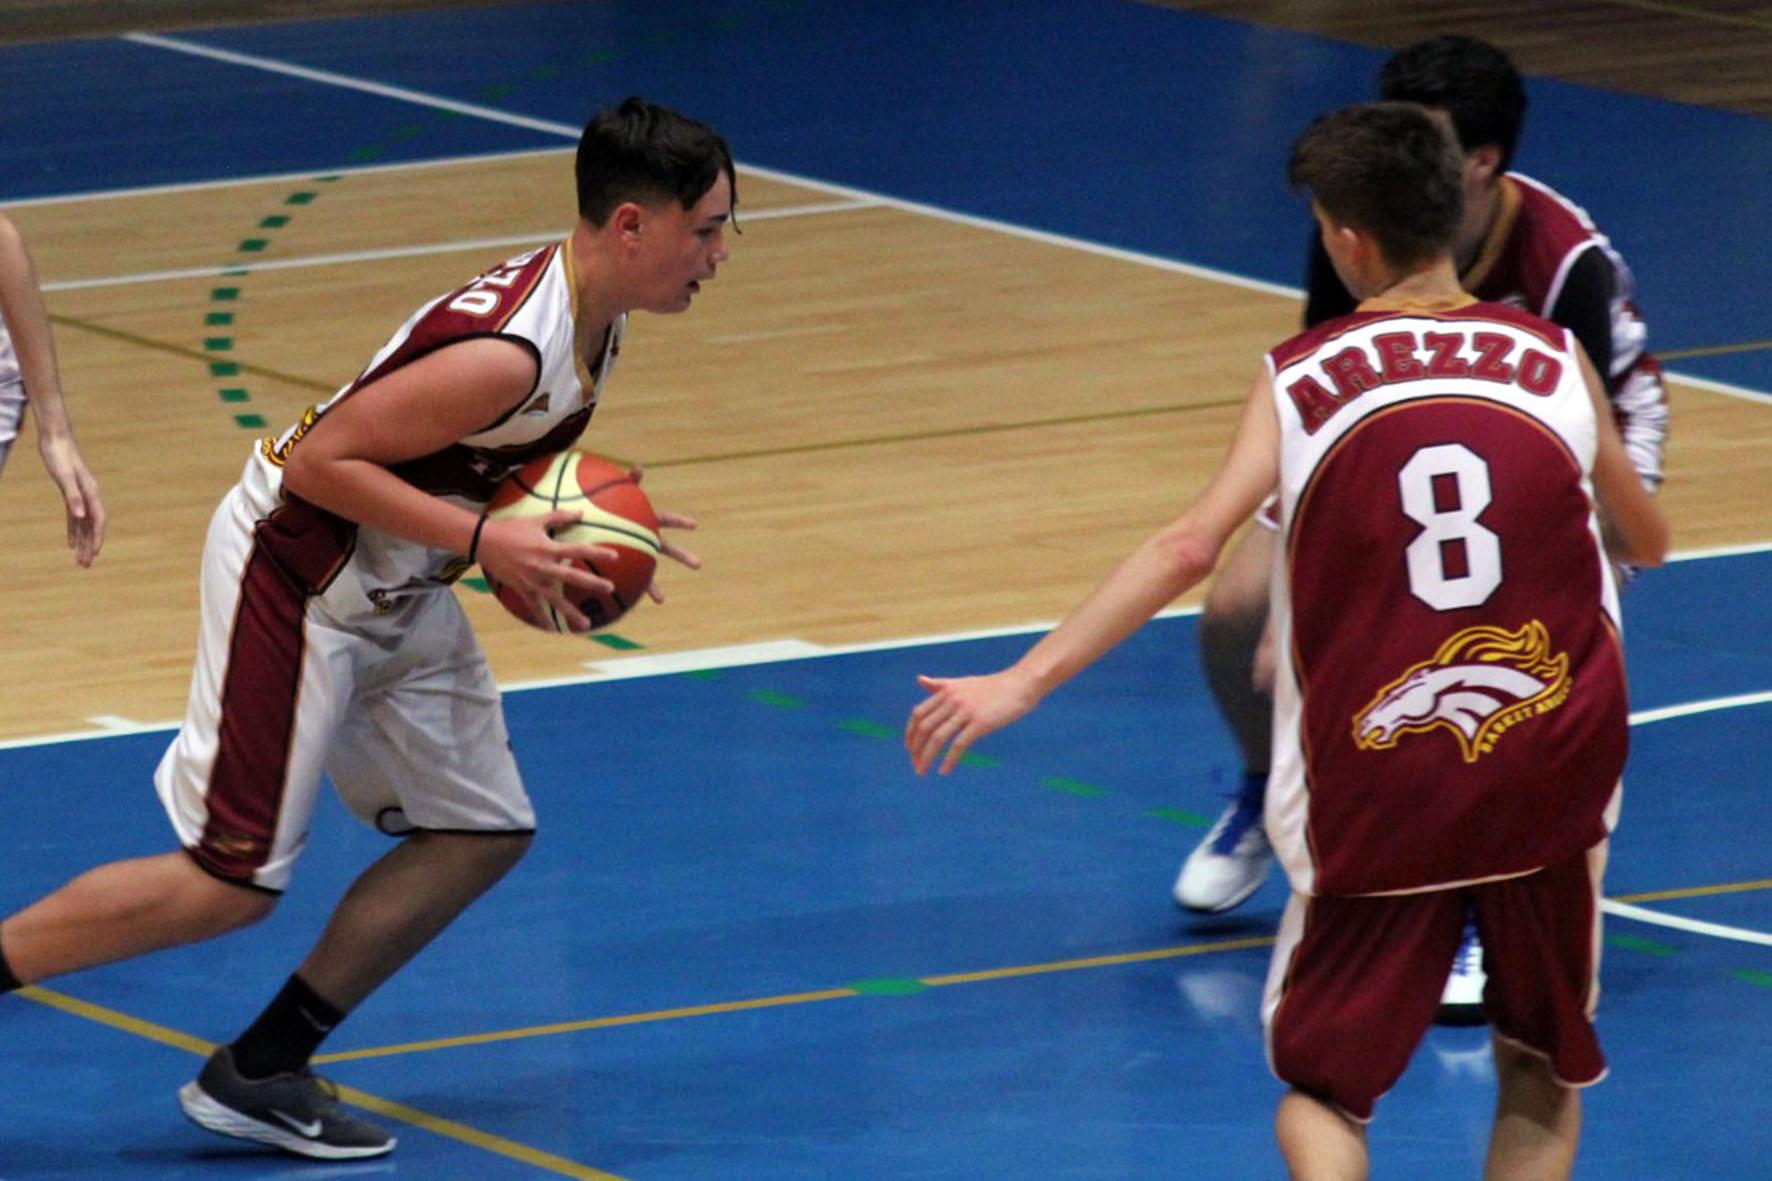 Iniziati campionati giovanili Scuola Basket Arezzo.